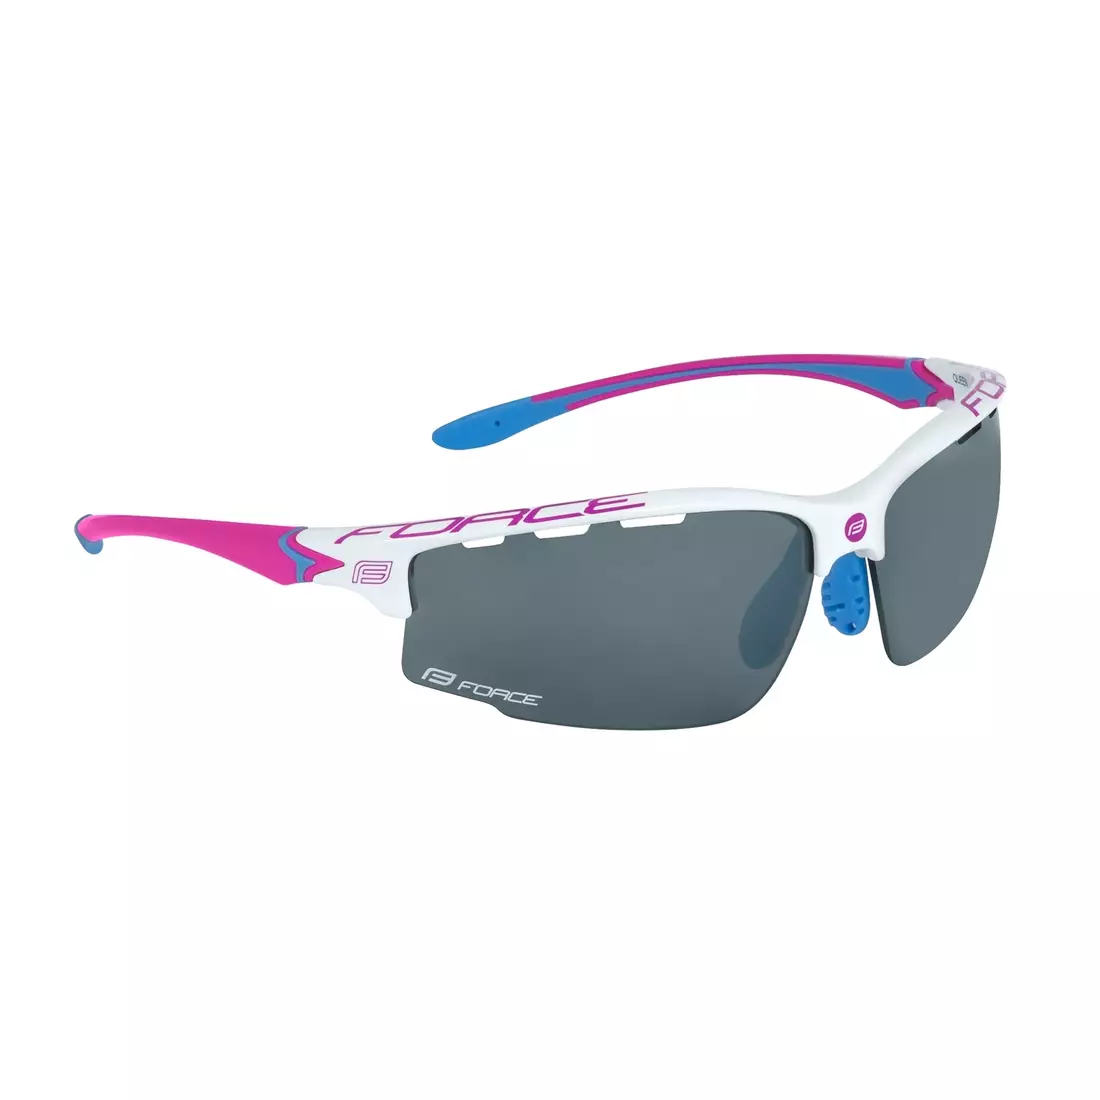 FORCE QUEEN Női sportszemüveg cserélhető lencsékkel, fehér és rózsaszín